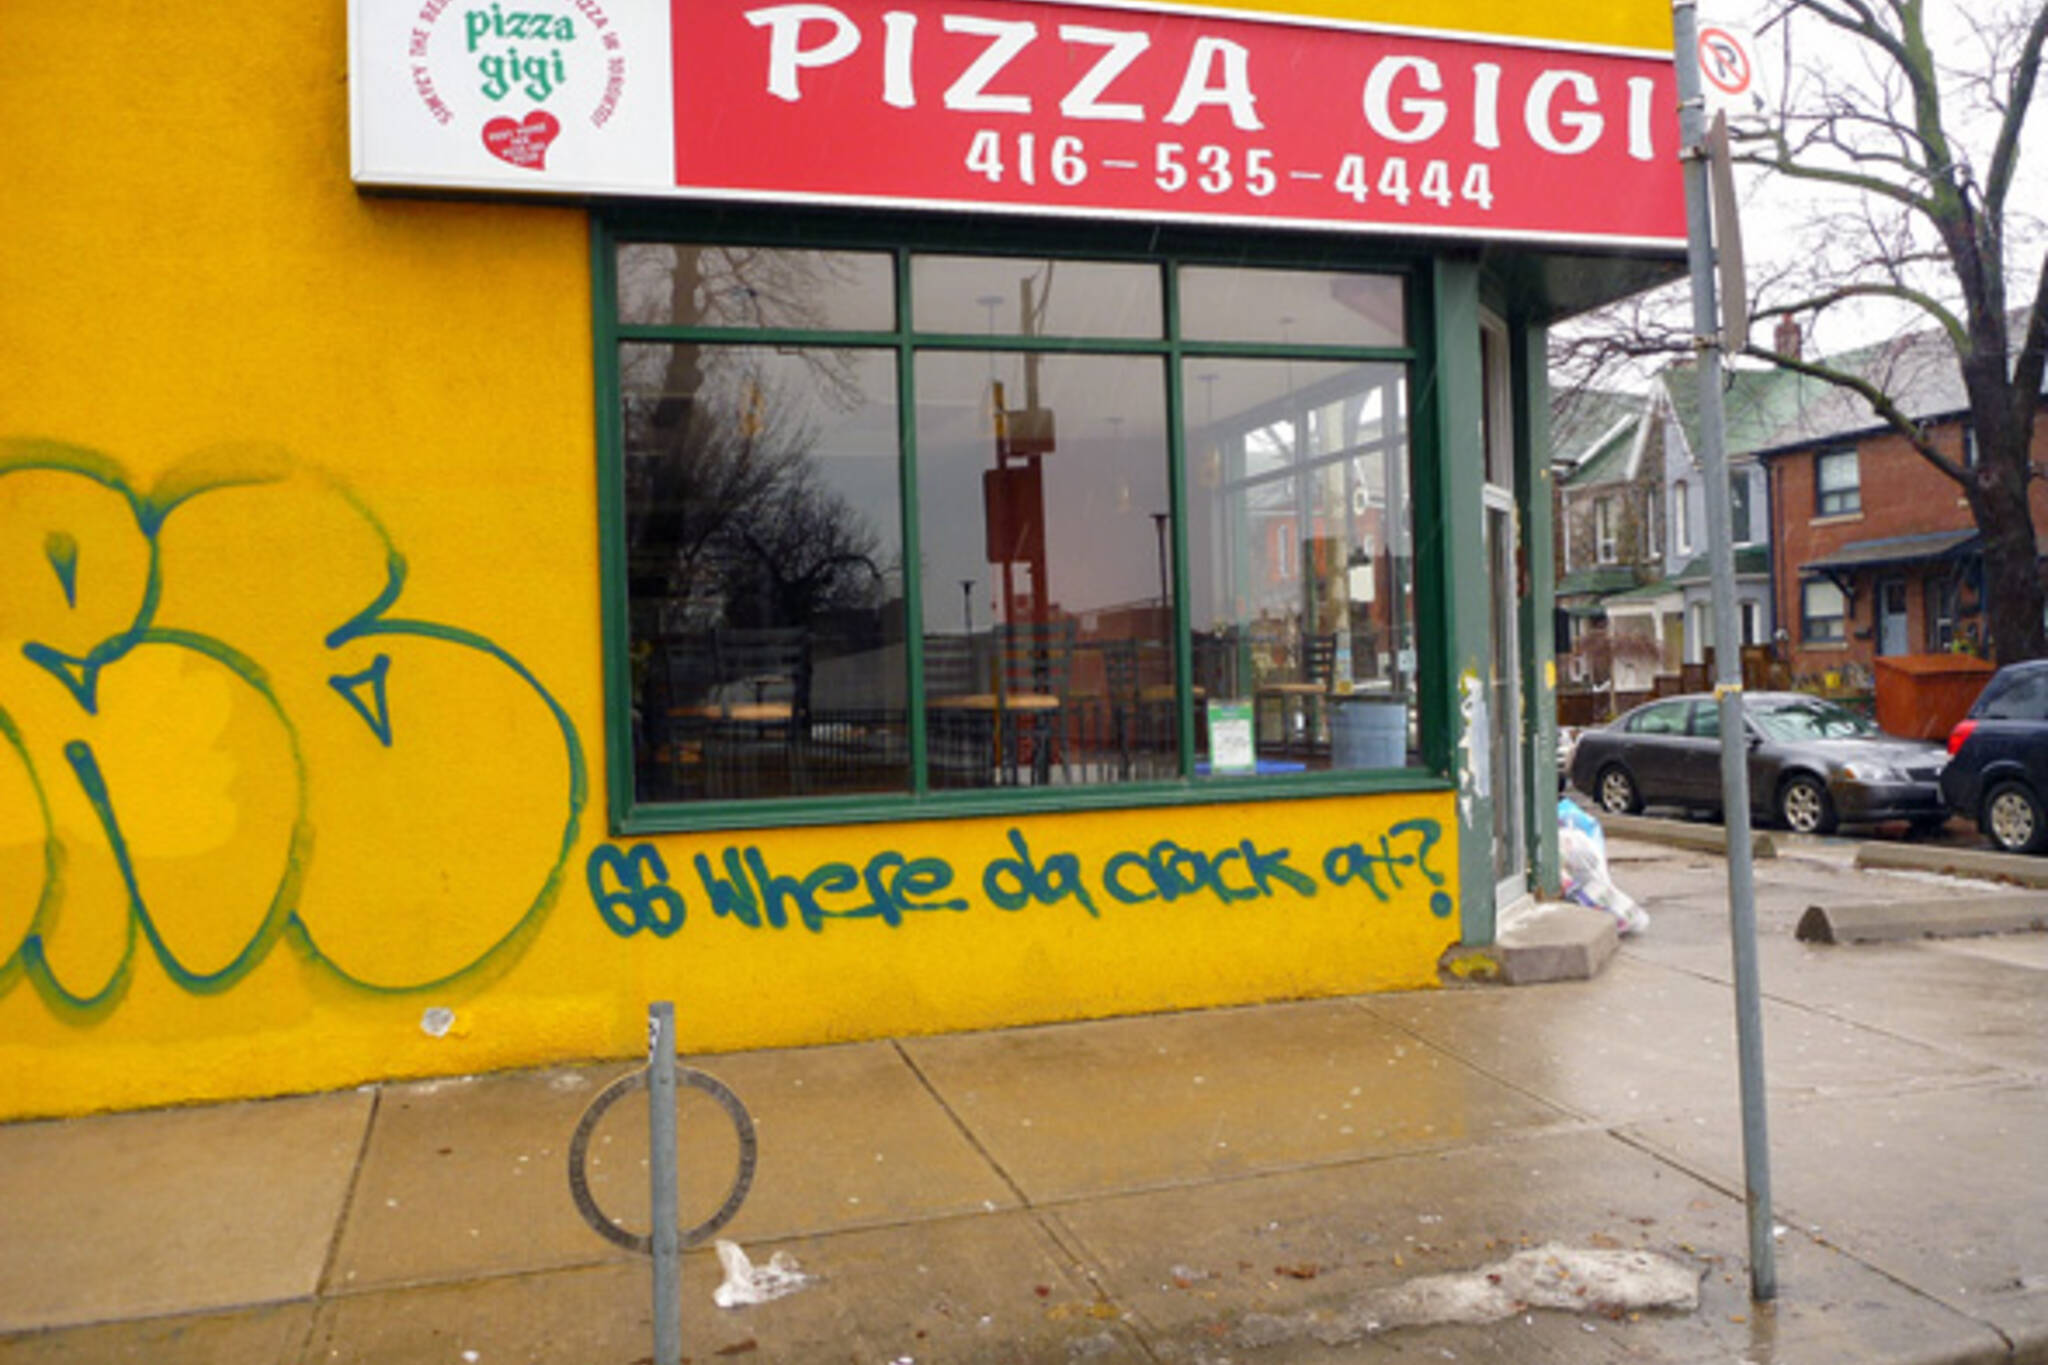 Pizza Gigi seized